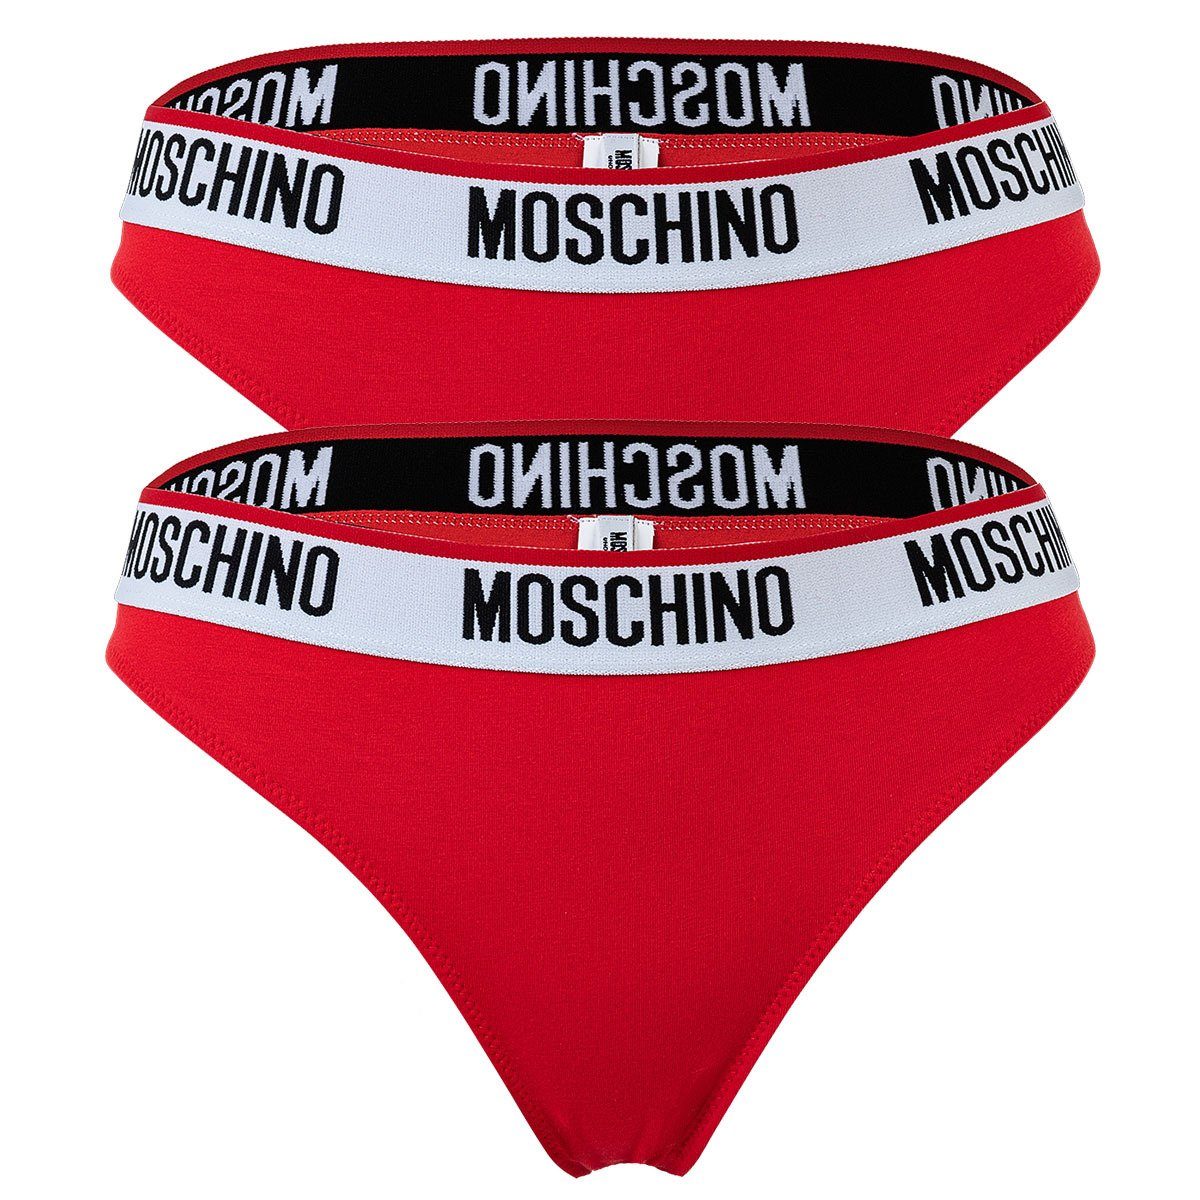 Moschino Slip Damen Slips 2er Pack - Briefs, Unterhose, Cotton Rot